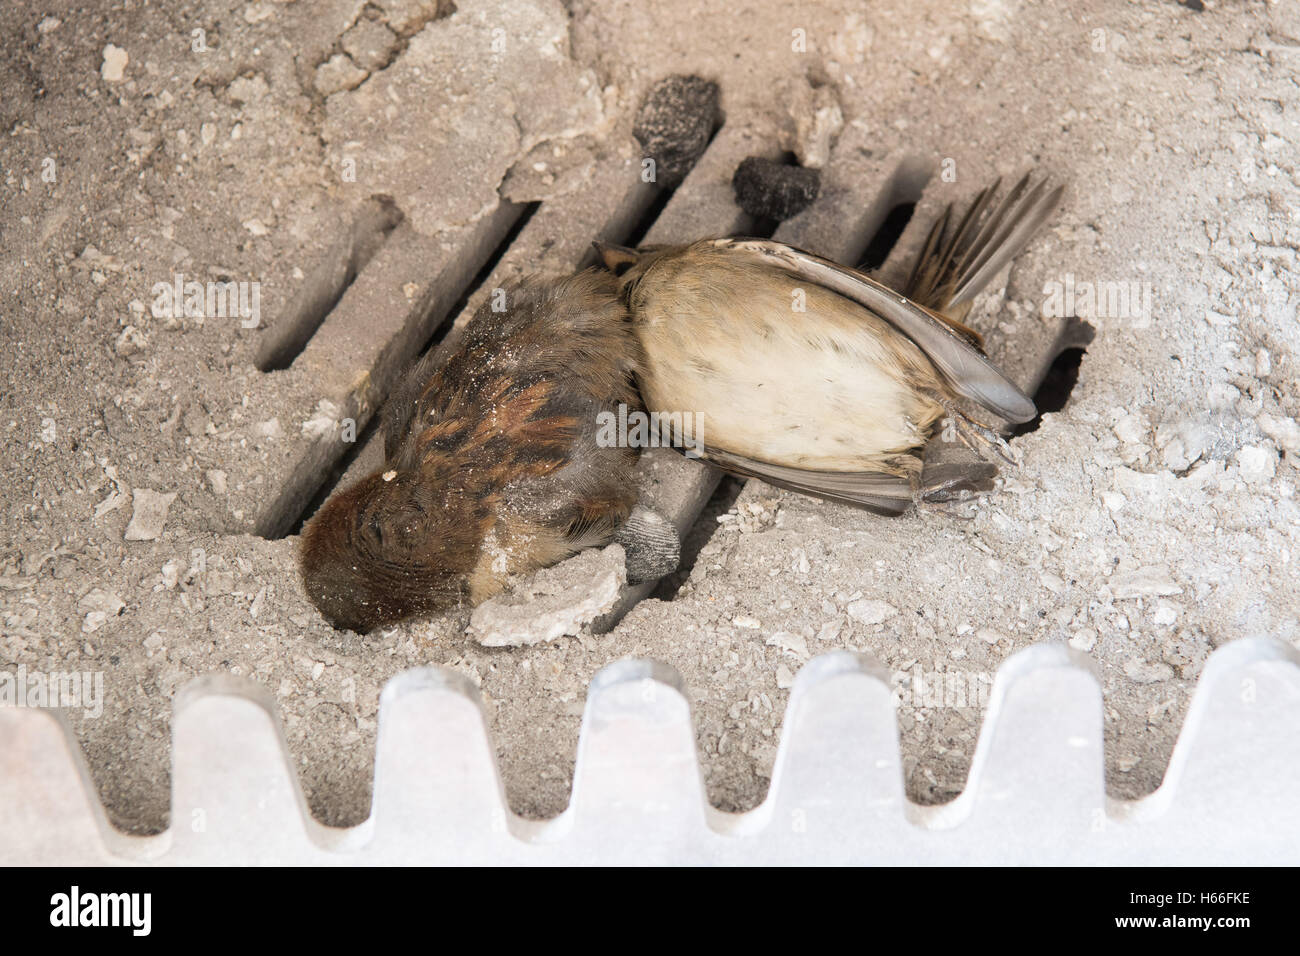 oiseaux piégés dans une cheminée - deux oiseaux morts (moineaux) trouvés à l'intérieur d'un poêle à bois après que les occupants sont revenus de vacances après le barrage Banque D'Images